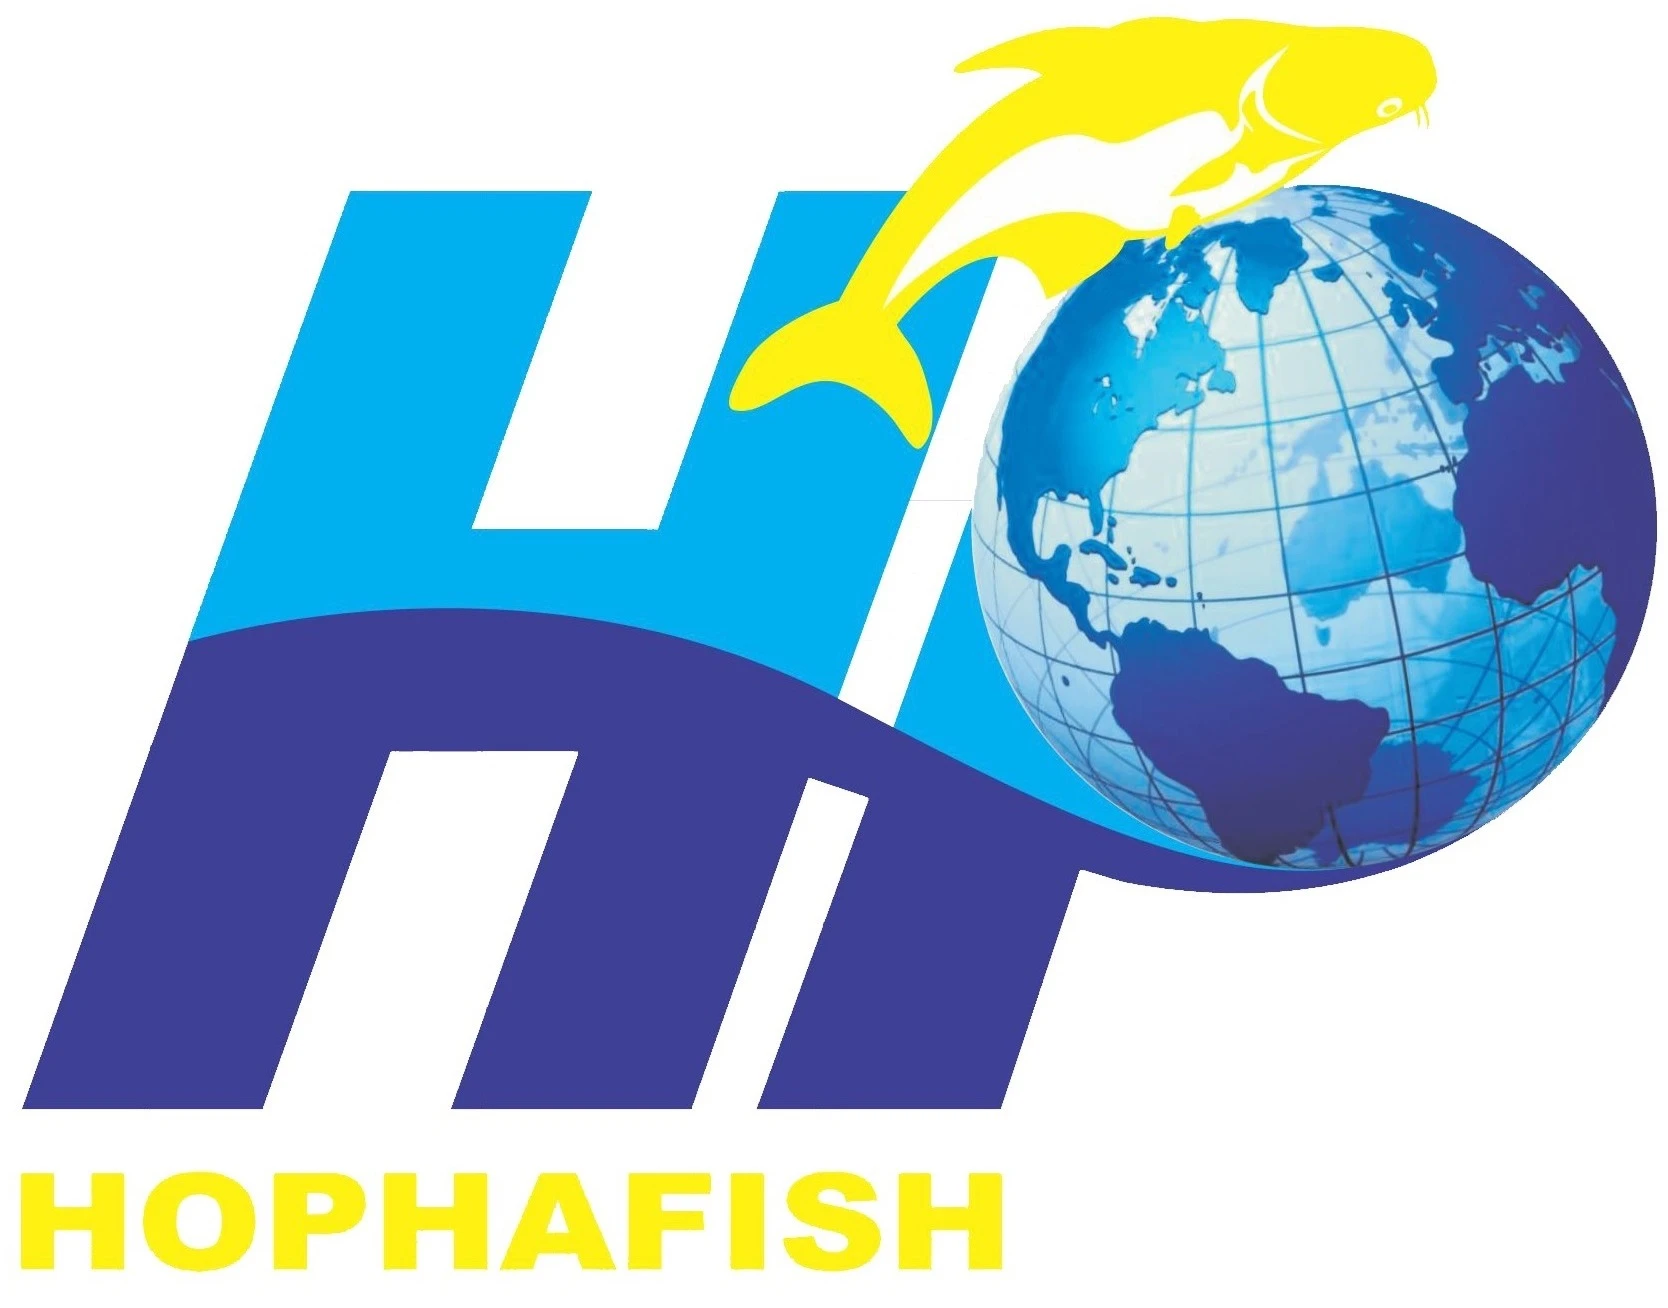 Hophafish